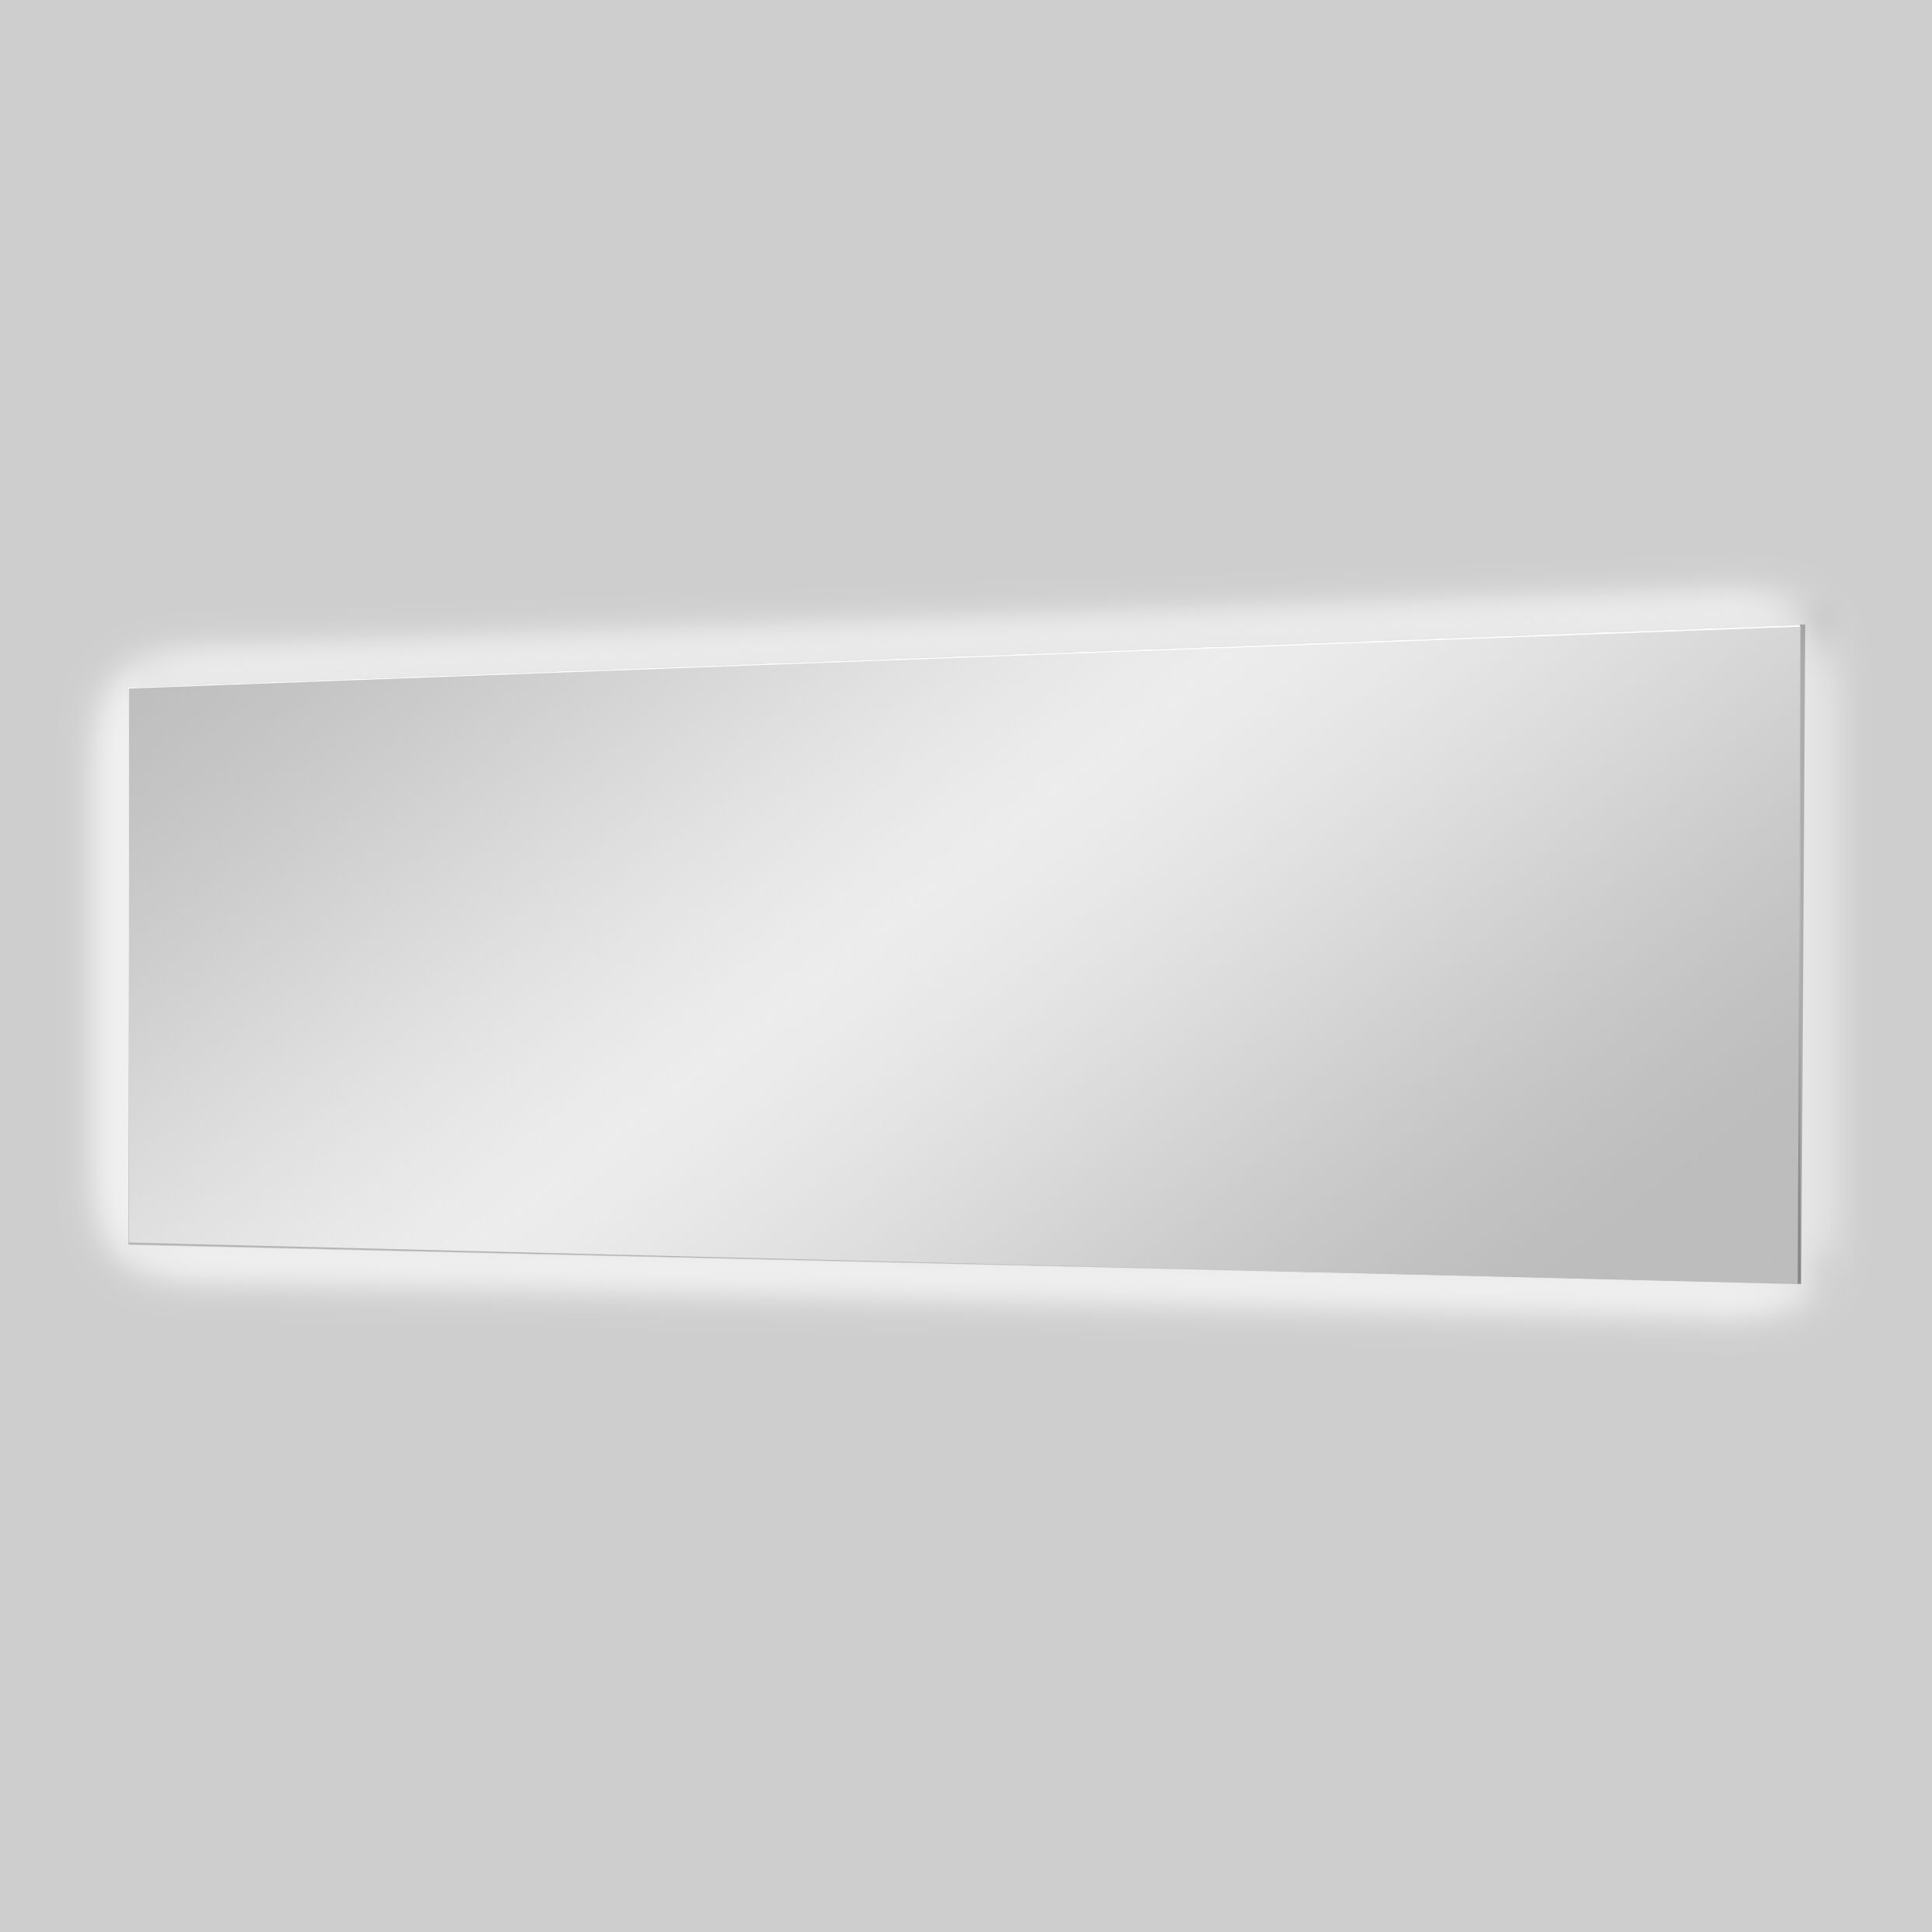 Balmani Giro rechthoekig badkamerspiegel 195 x 65 cm met spiegelverlichting